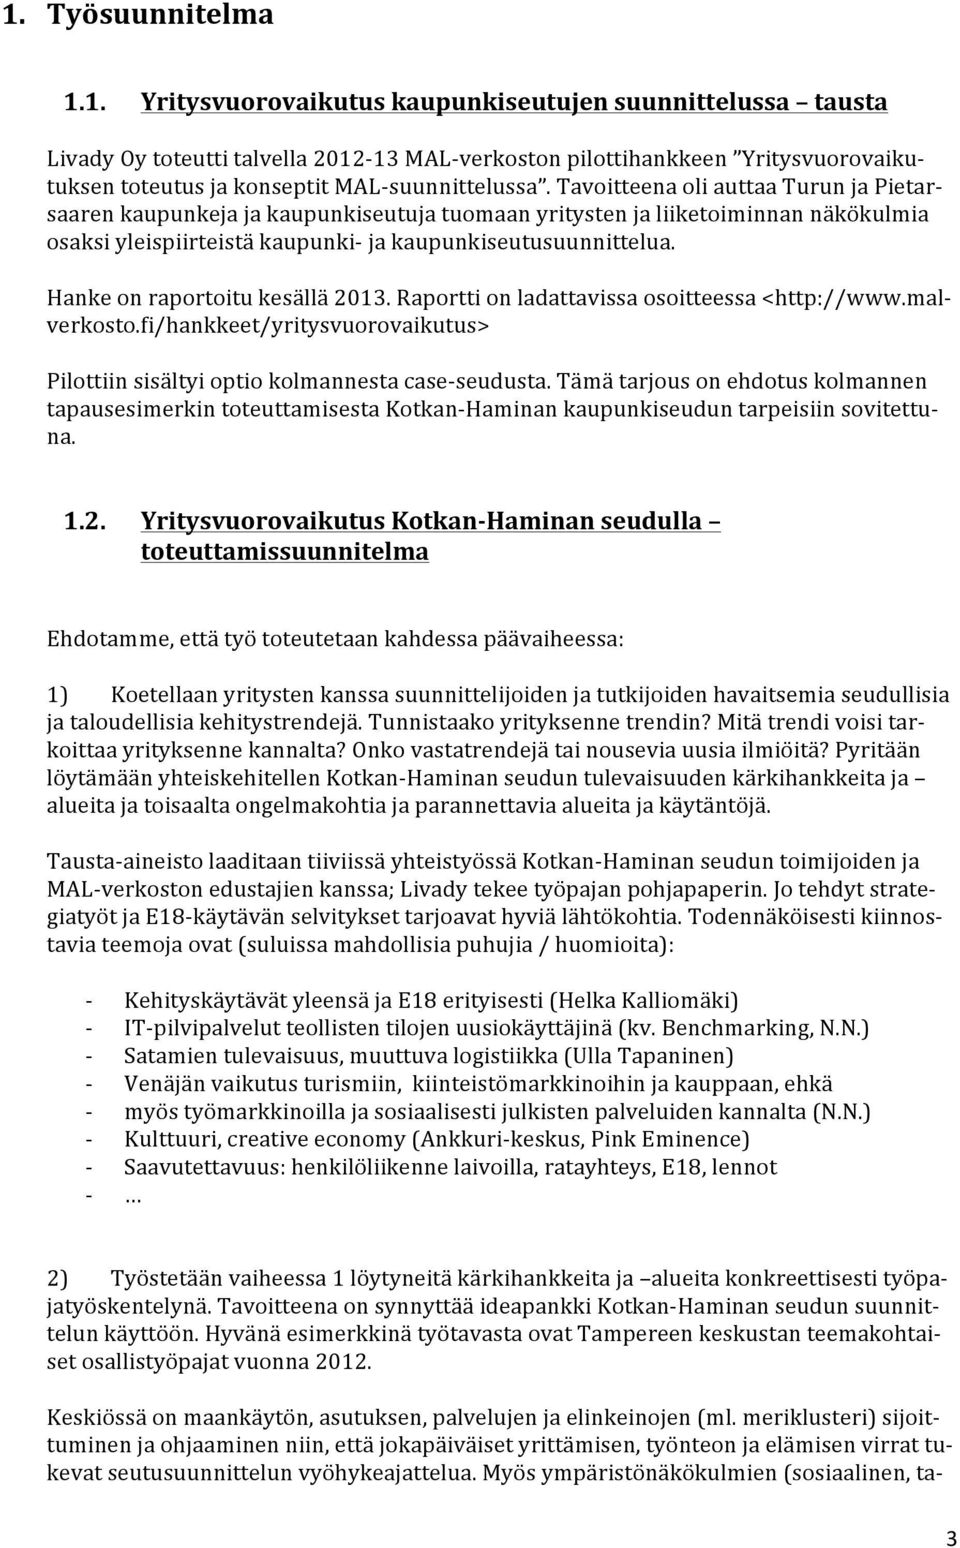 Hanke on raportoitu kesällä 2013. Raportti on ladattavissa osoitteessa <http://www.mal- verkosto.fi/hankkeet/yritysvuorovaikutus> Pilottiin sisältyi optio kolmannesta caseseudusta.